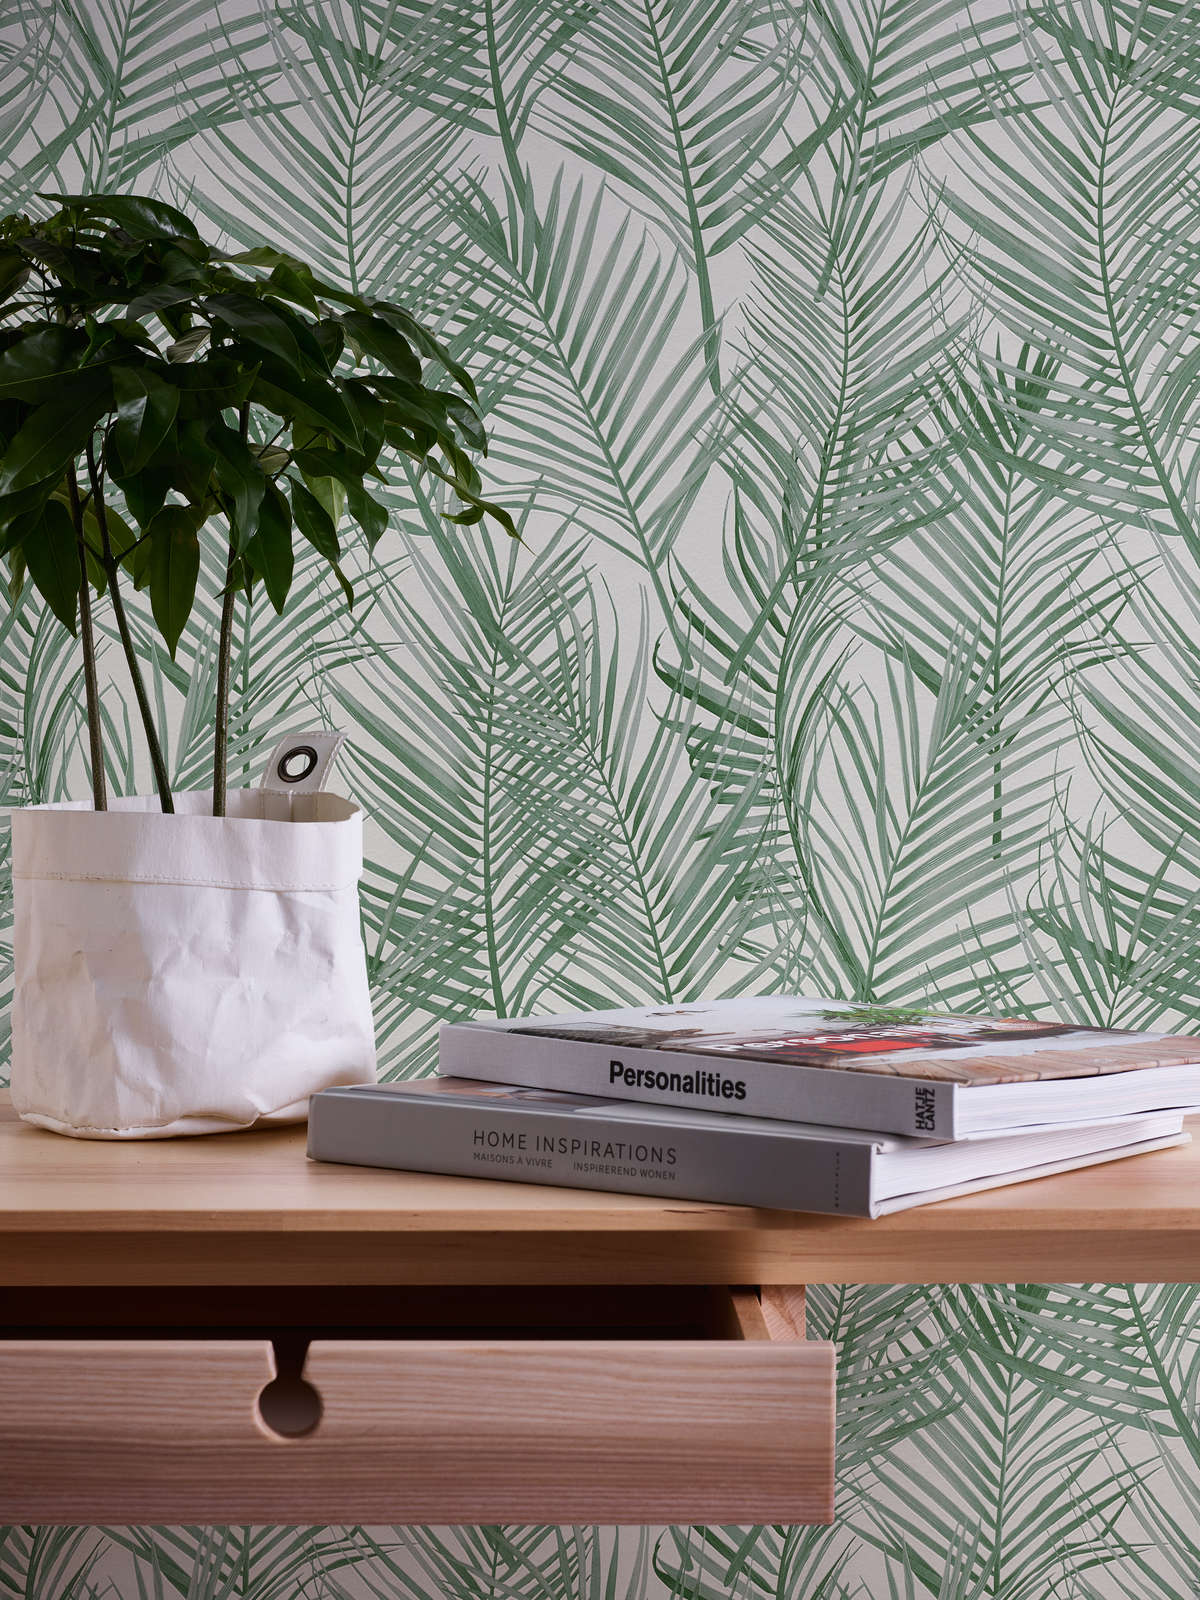             Vliesbehang met groot palmboompatroon - groen, wit
        